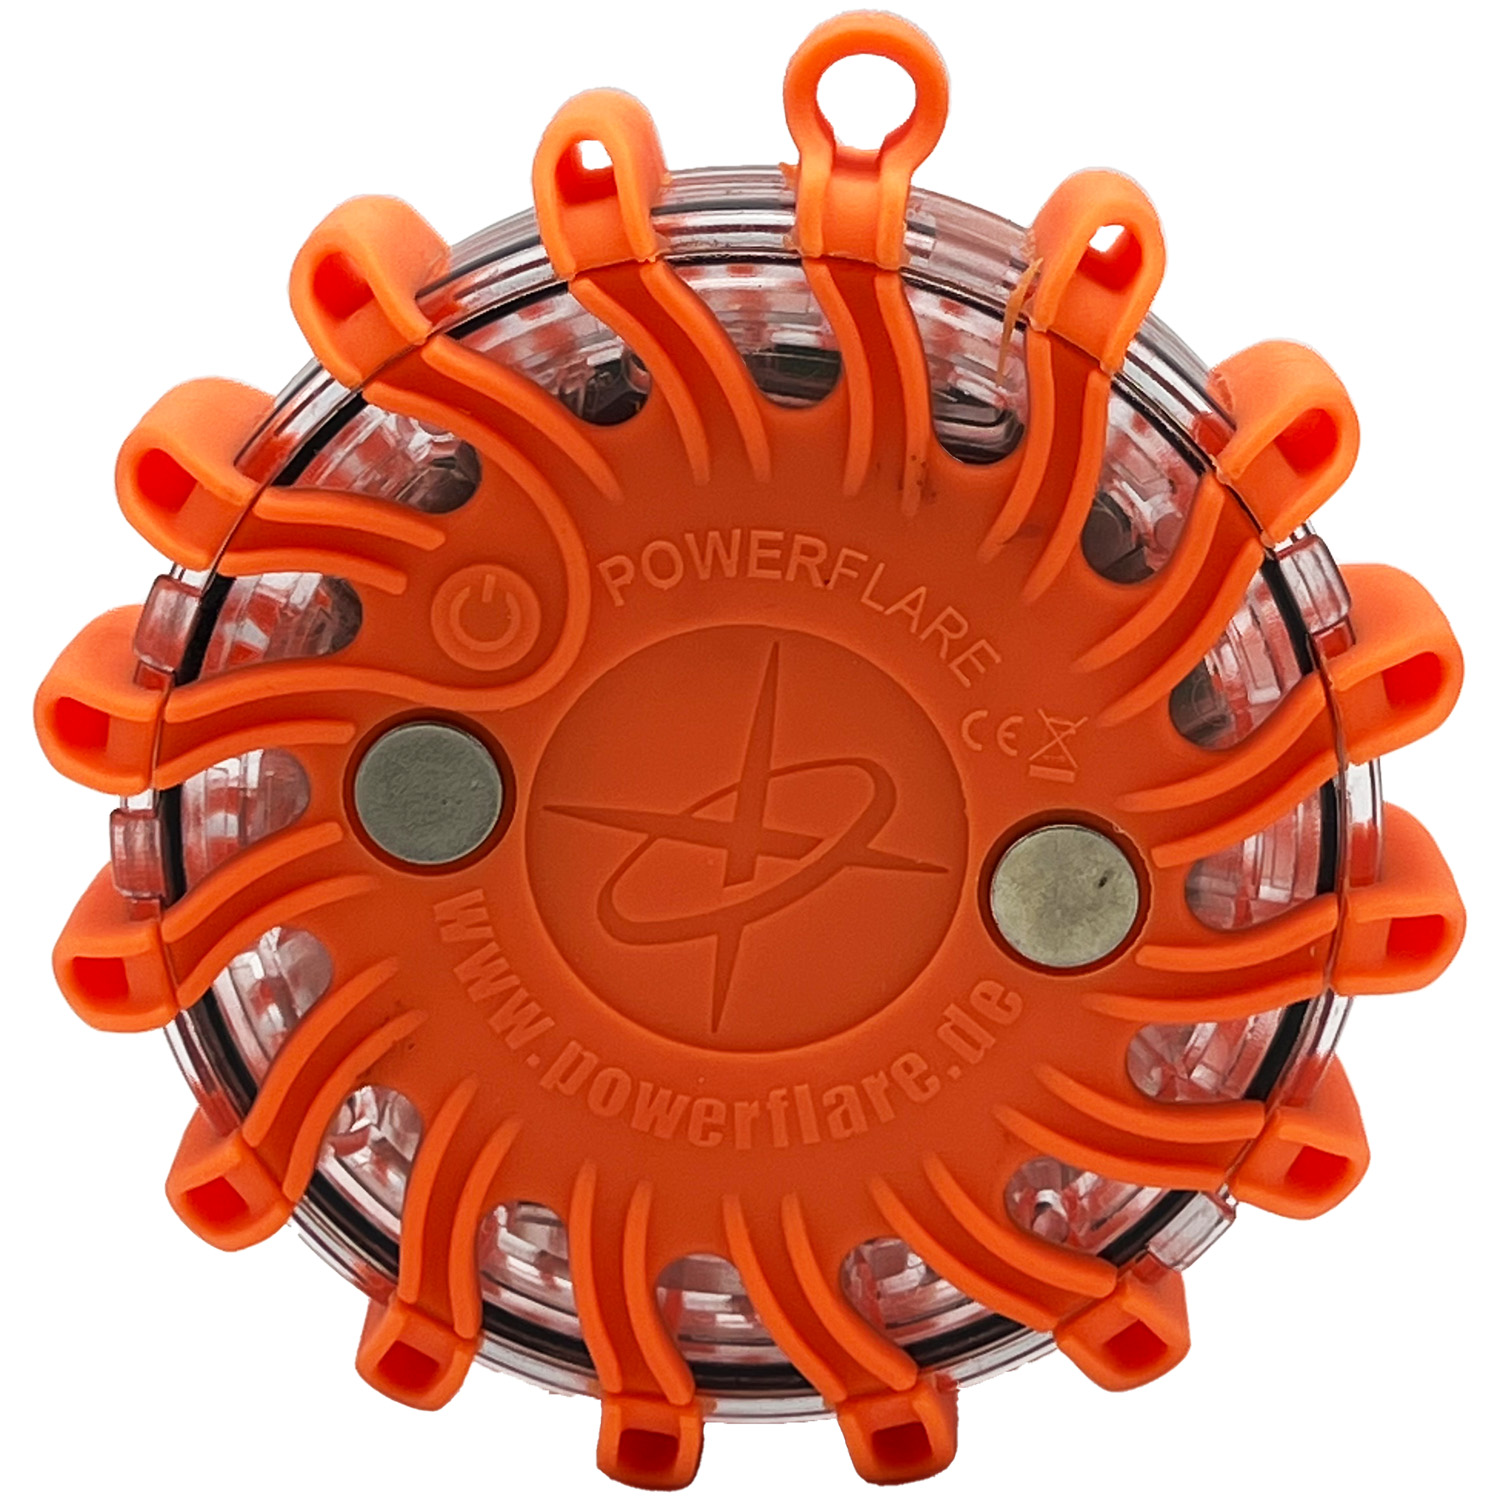 Warnleuchte Led - Orange Notfall-Blinklicht: Kompakt & Perfekt für